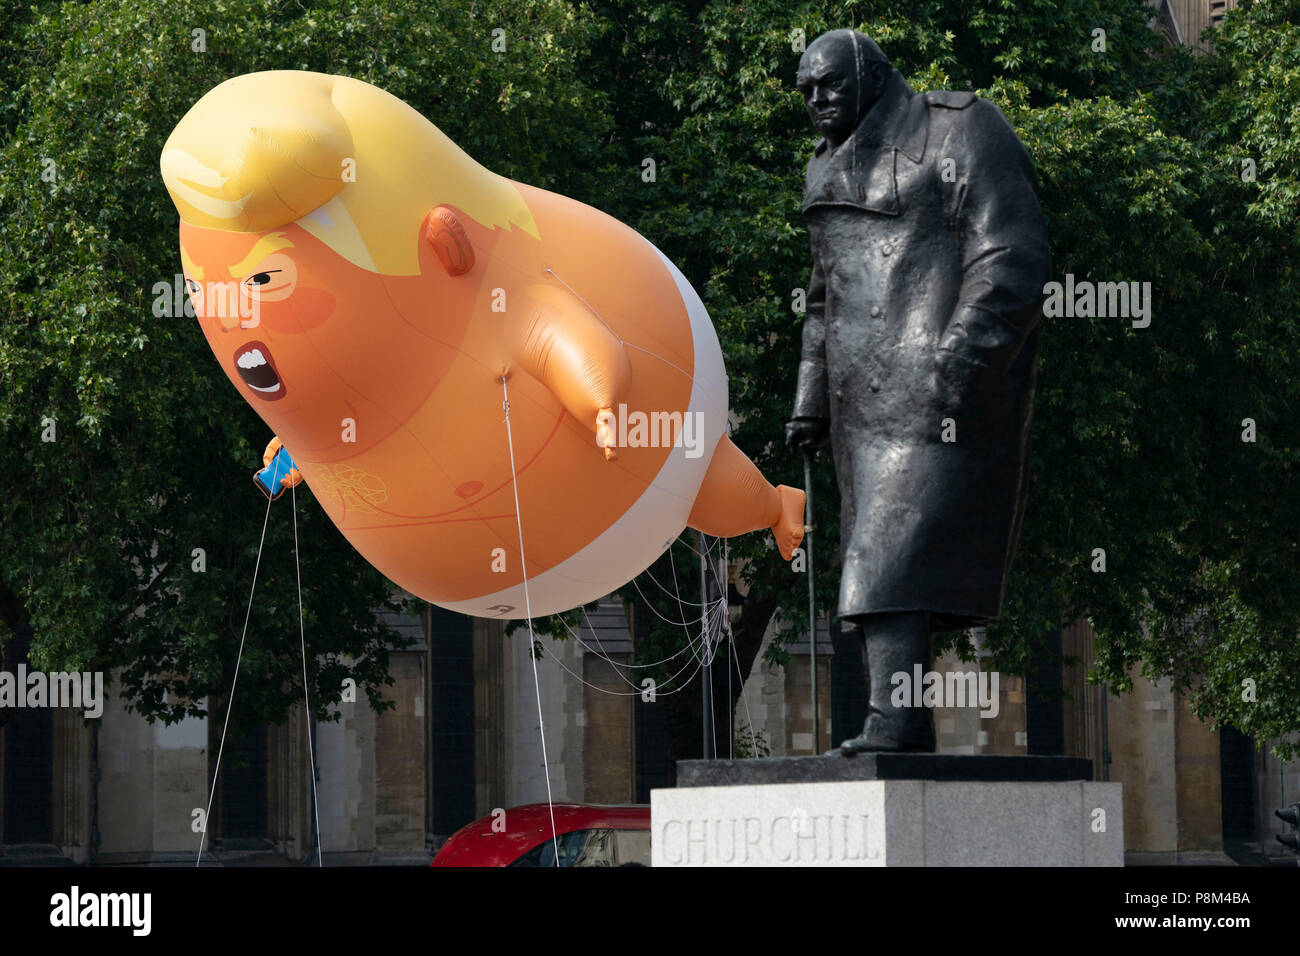 LONDON - Juli 13: Ein Donald Trump baby Ballon fliegt neben der Statue von Winston Churchill in Parliament Square in London am 13. Juli 2018, während des Besuchs in Großbritannien durch US-Präsident, Donald Trump. Foto von David Levenson Credit: David Levenson/Alamy leben Nachrichten Stockfoto